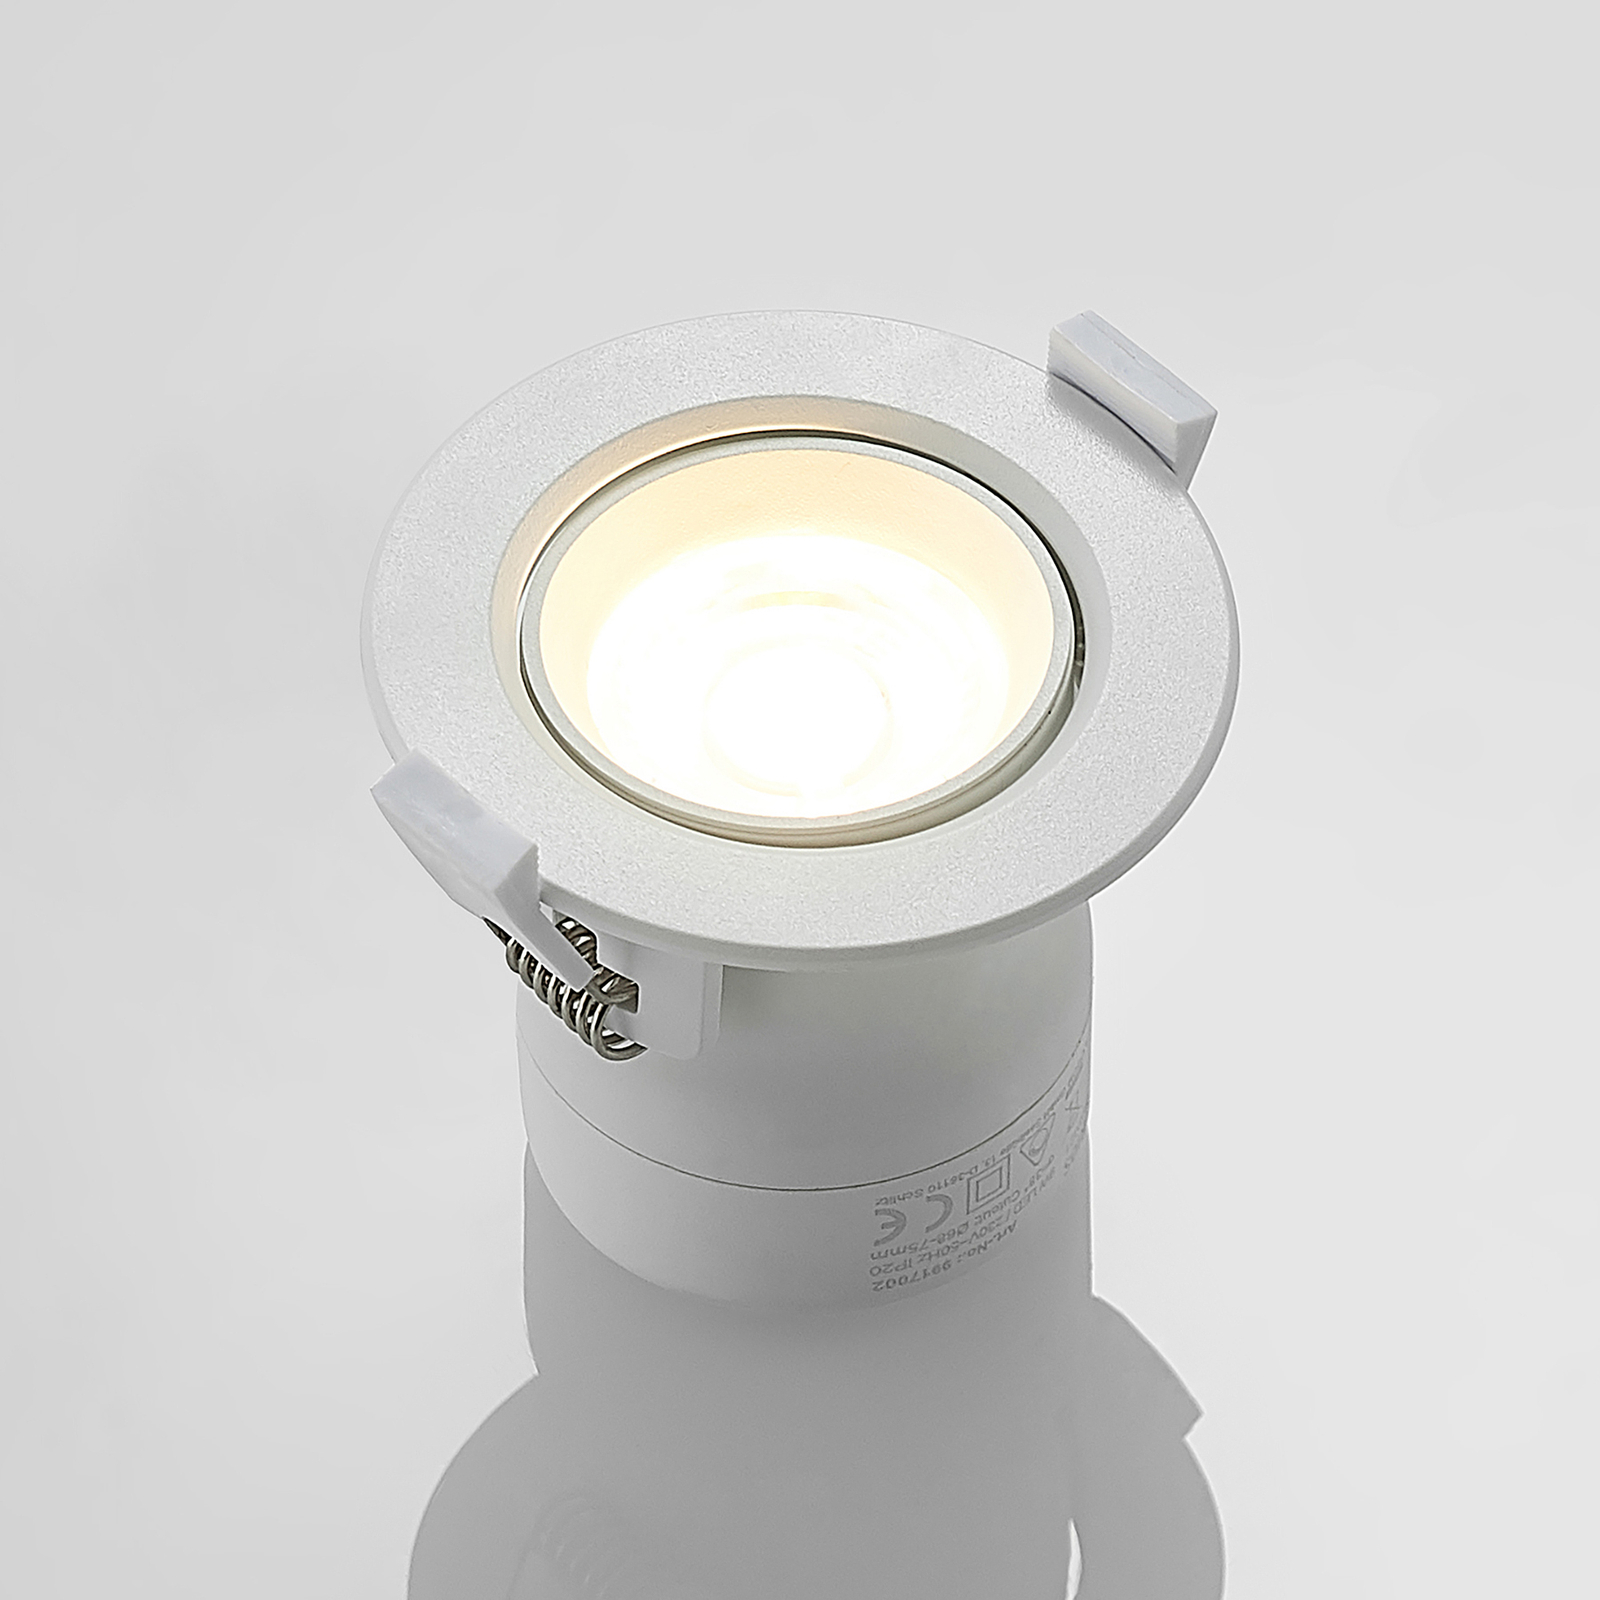 Prios LED svetilka za vgradnjo Shima, bela, 9W, 3000K, 3 enote, možnost